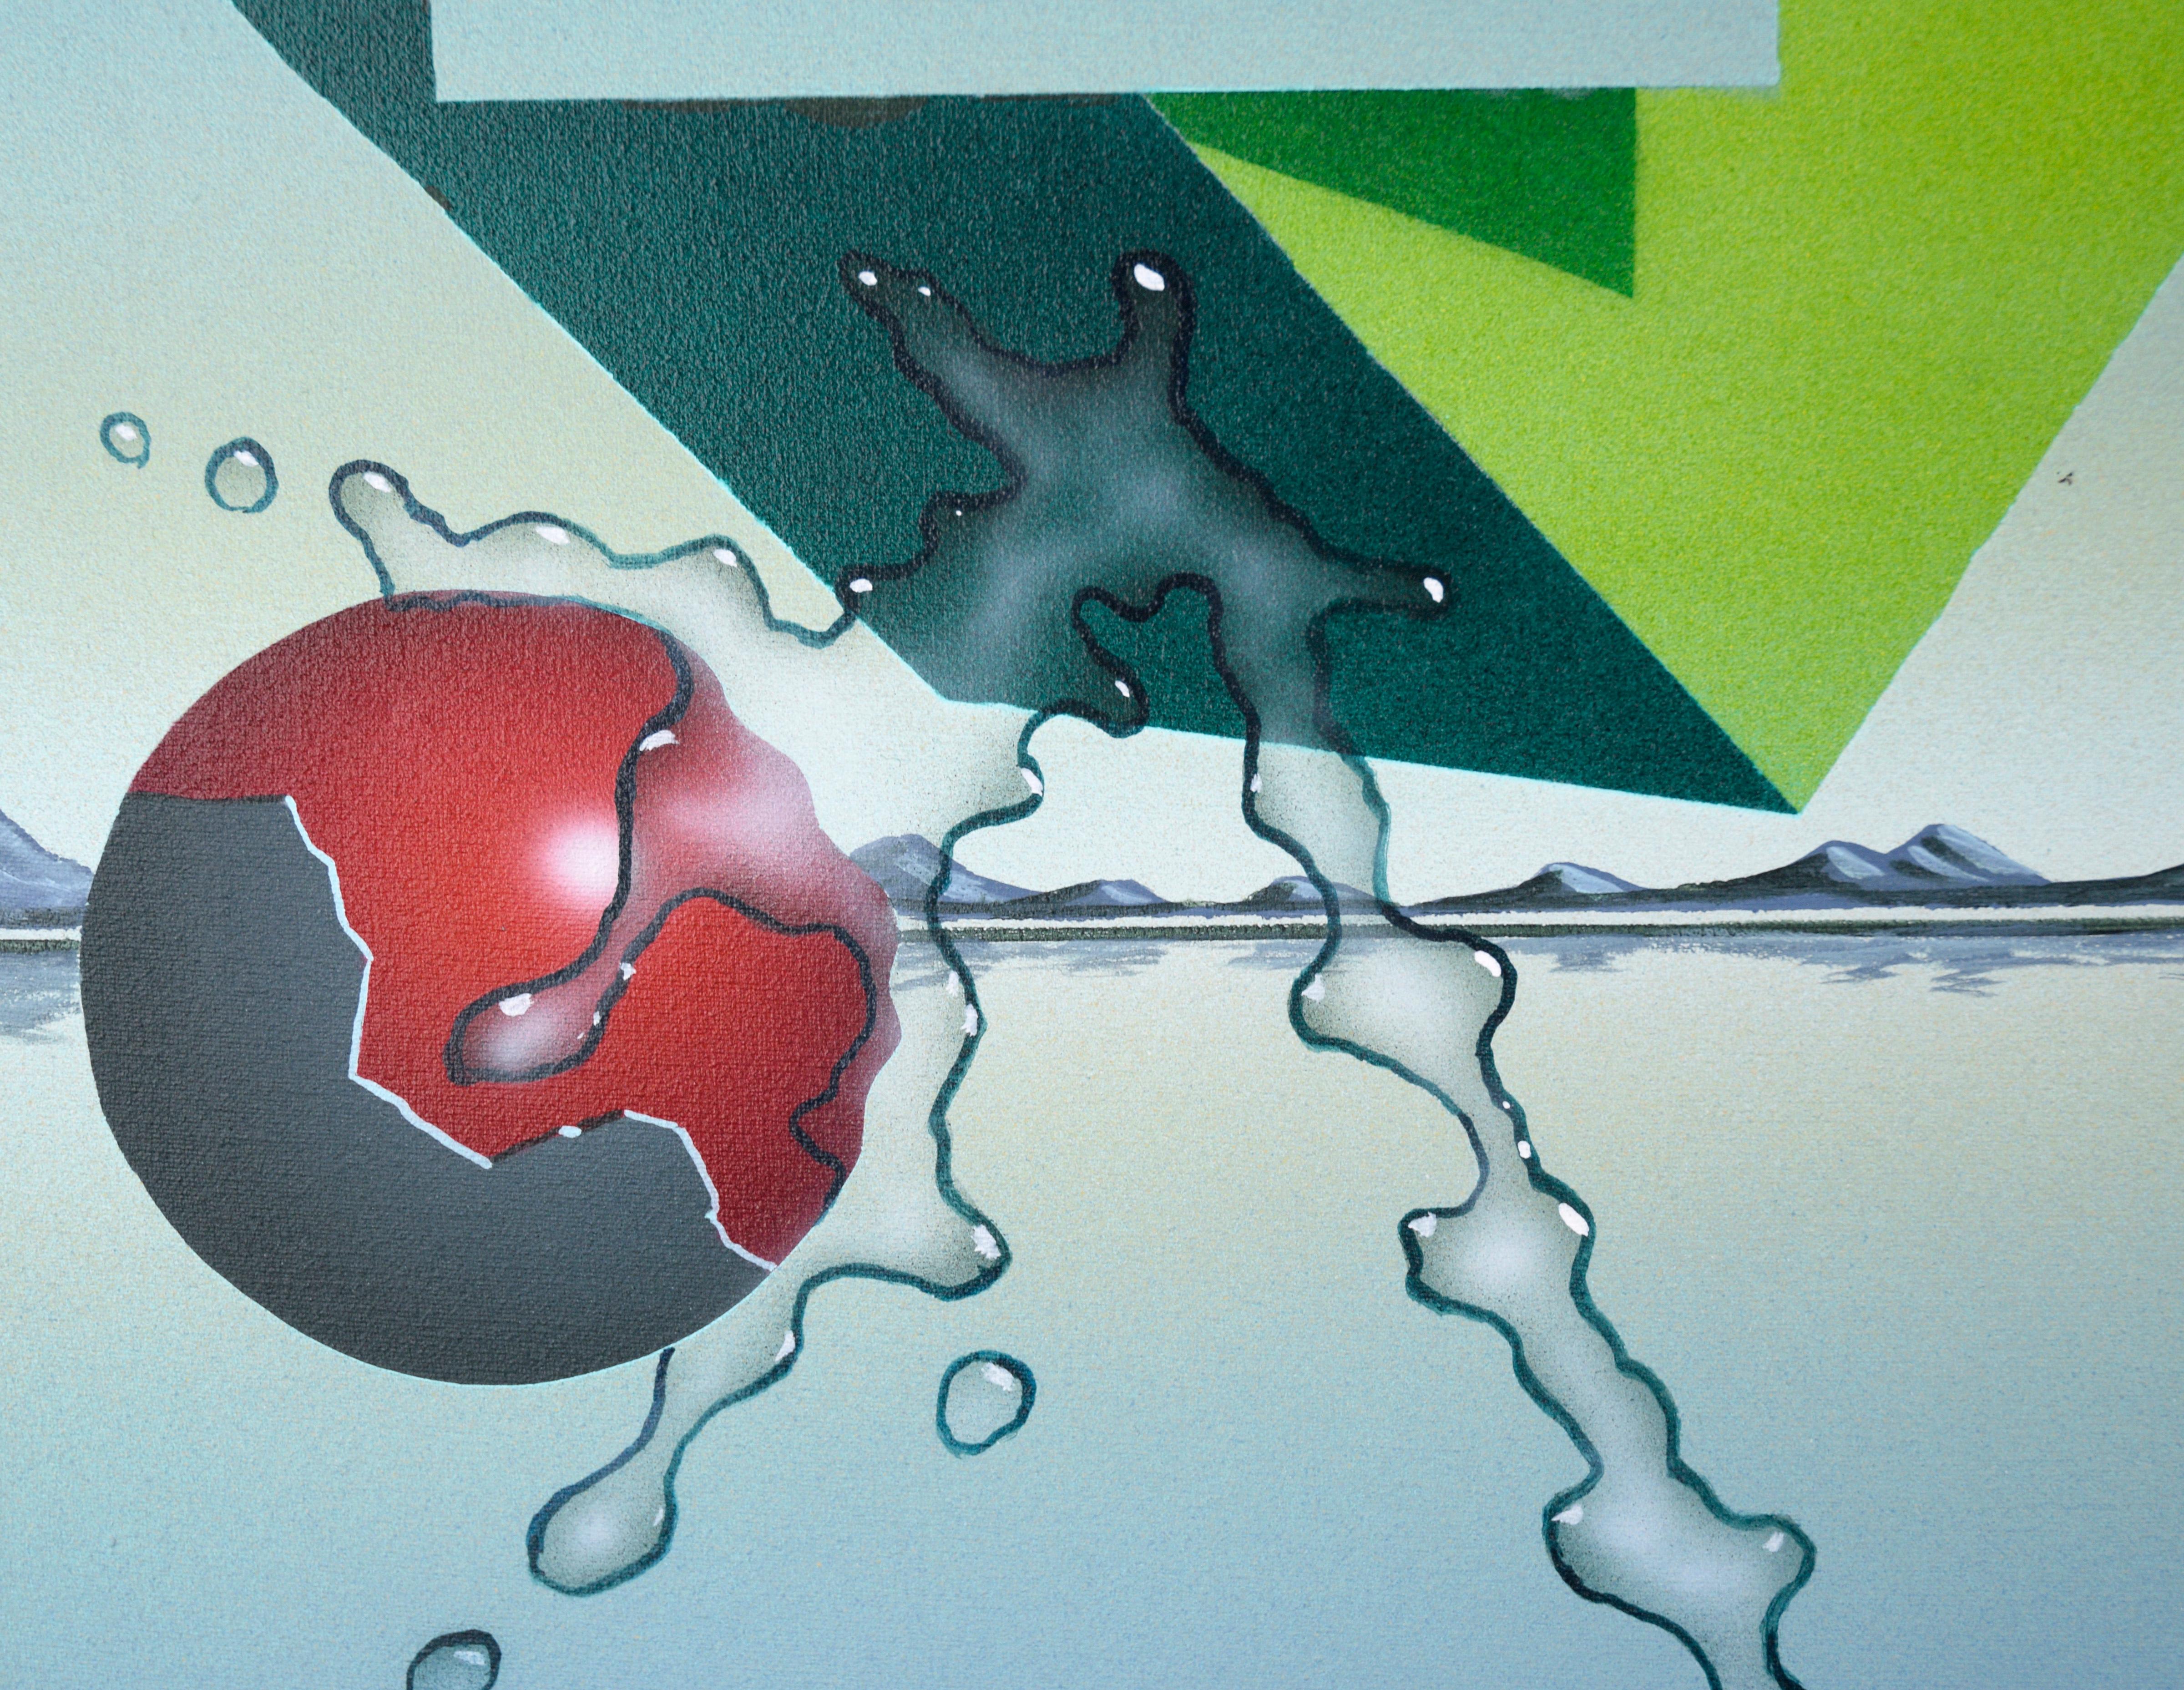 Sphères et cubes géométriques - Paysage surréaliste en acrylique sur toile

Paysage surréaliste lumineux et vivant de Randy Dunham (américain, né en 1961). Six sphères flottent au-dessus d'un paysage minimaliste composé de montagnes et d'une étendue